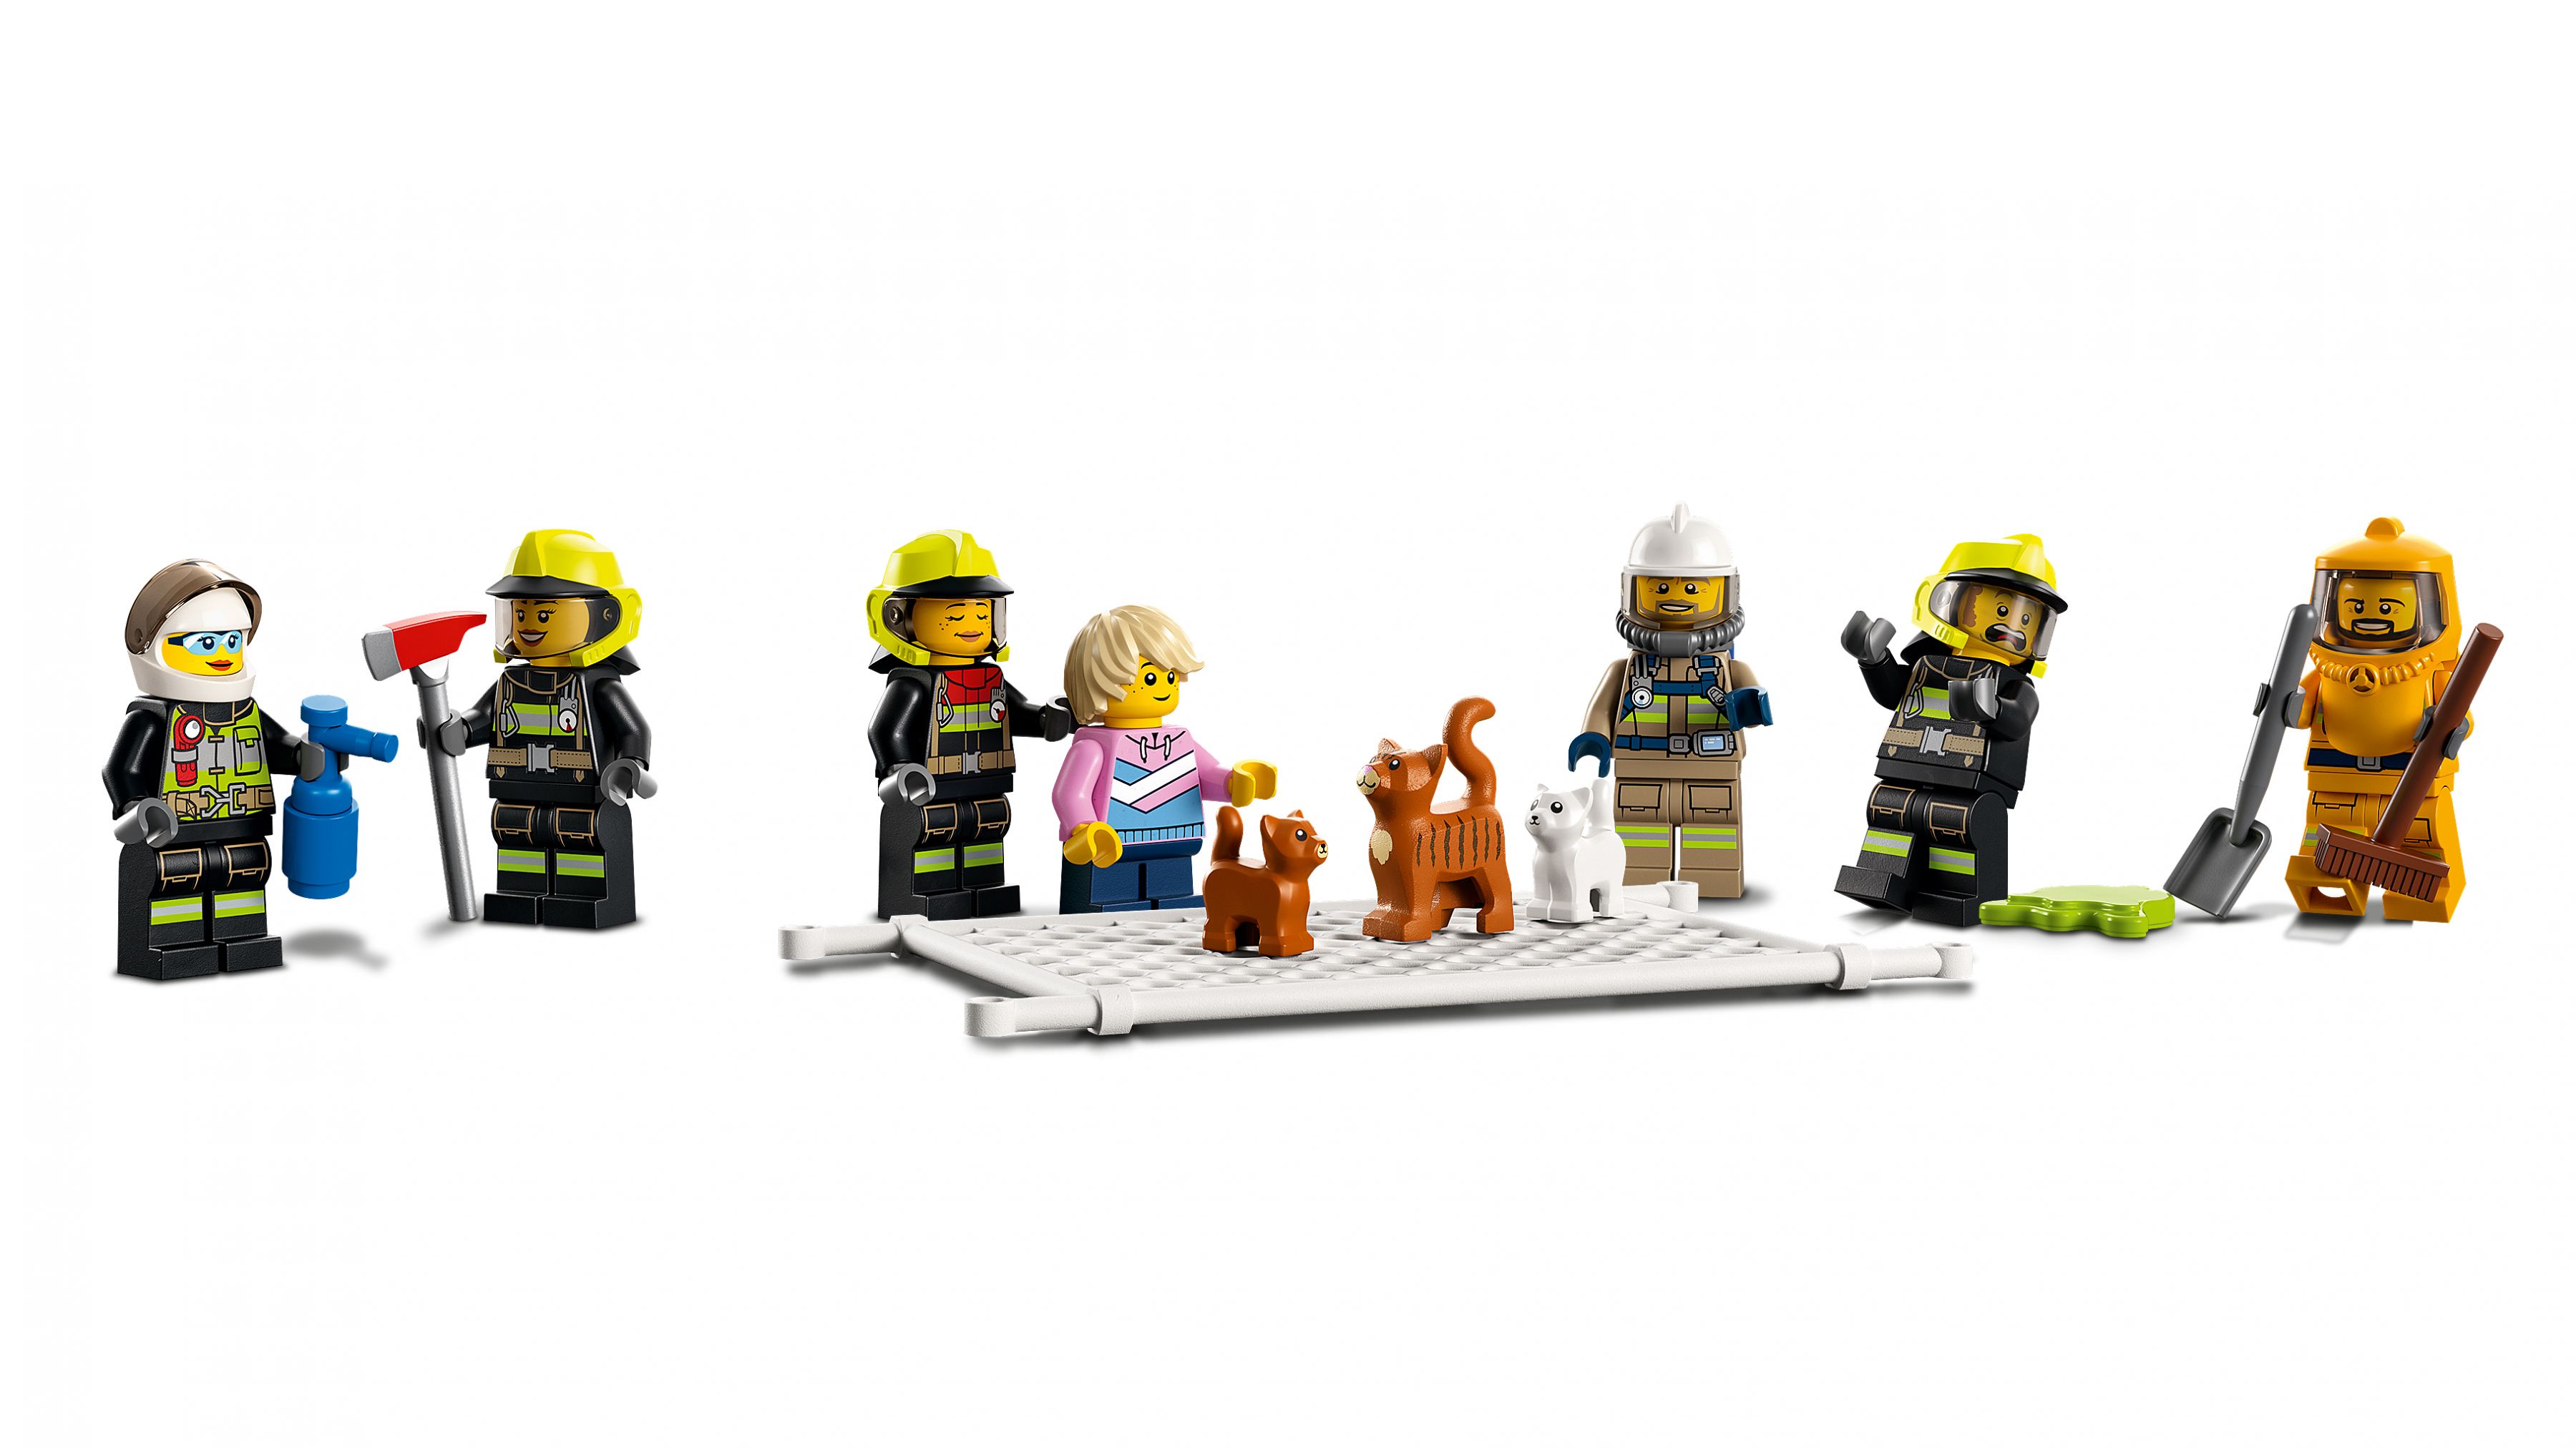 LEGO City 60321 Feuerwehreinsatz mit Löschtruppe LEGO_60321_WEB_SEC01_NOBG.jpg